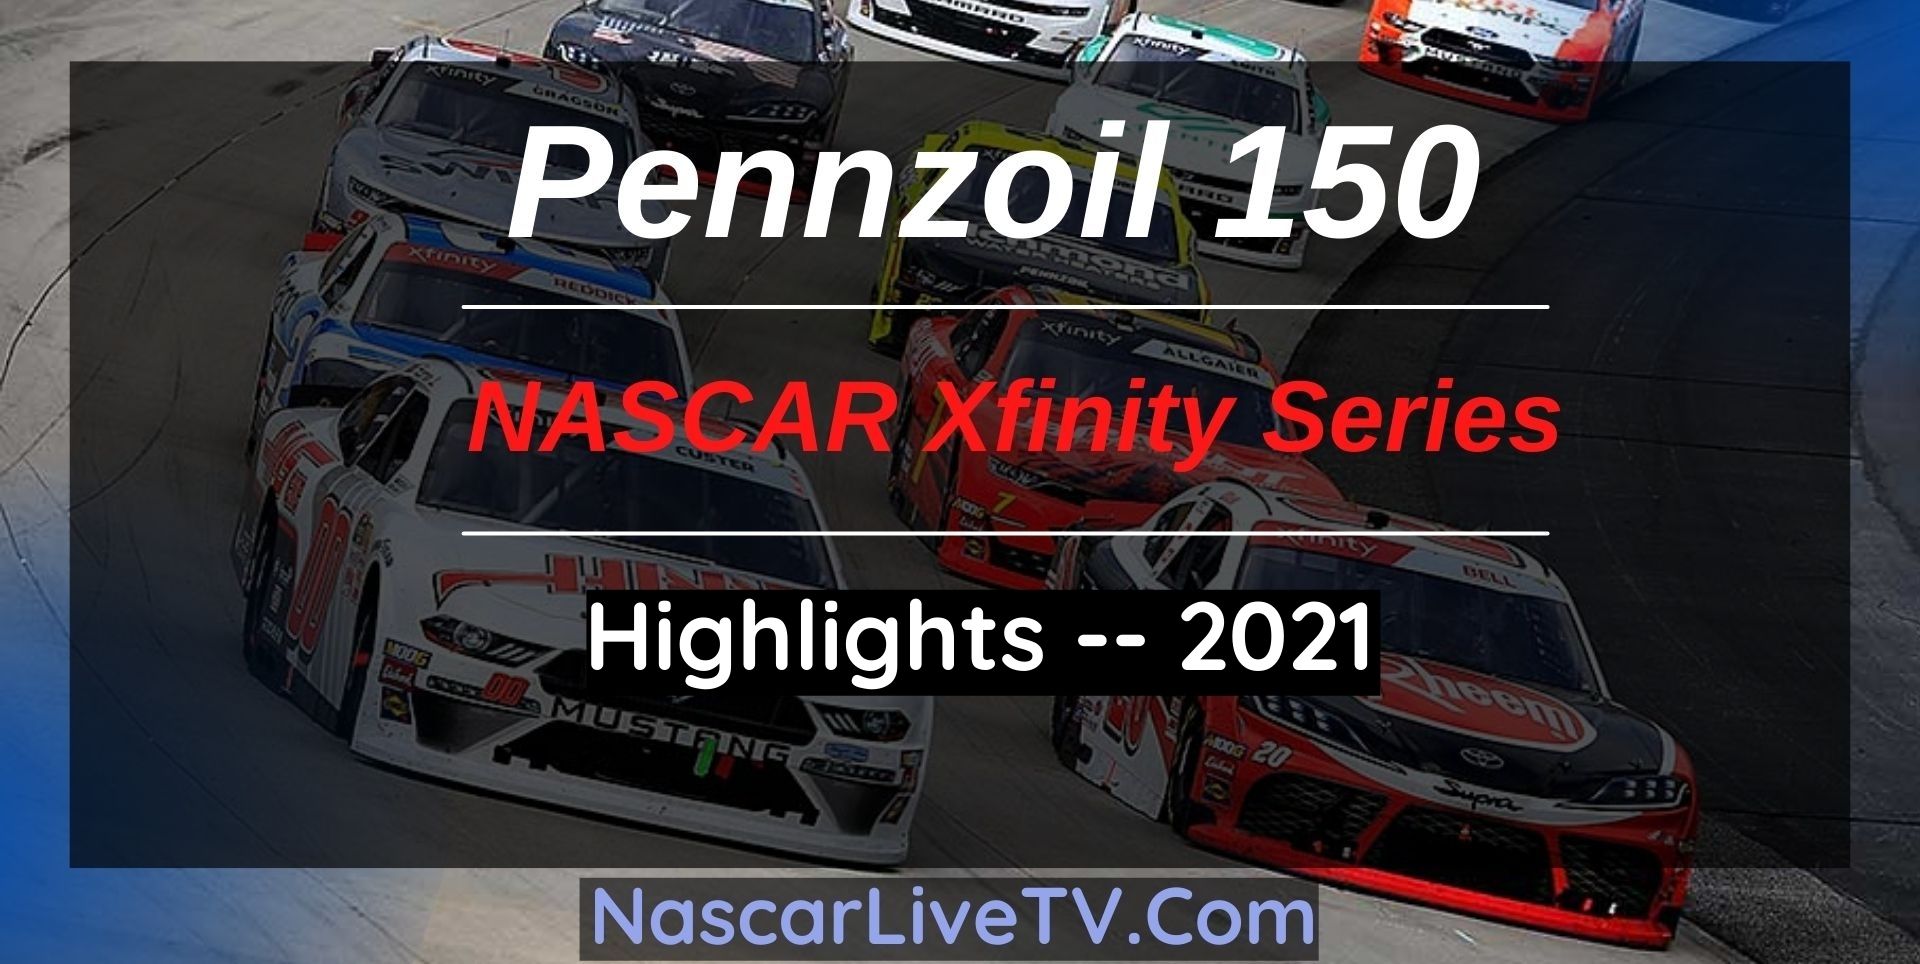 Pennzoil 150 Highlights NASCAR Xfinity Series 2021